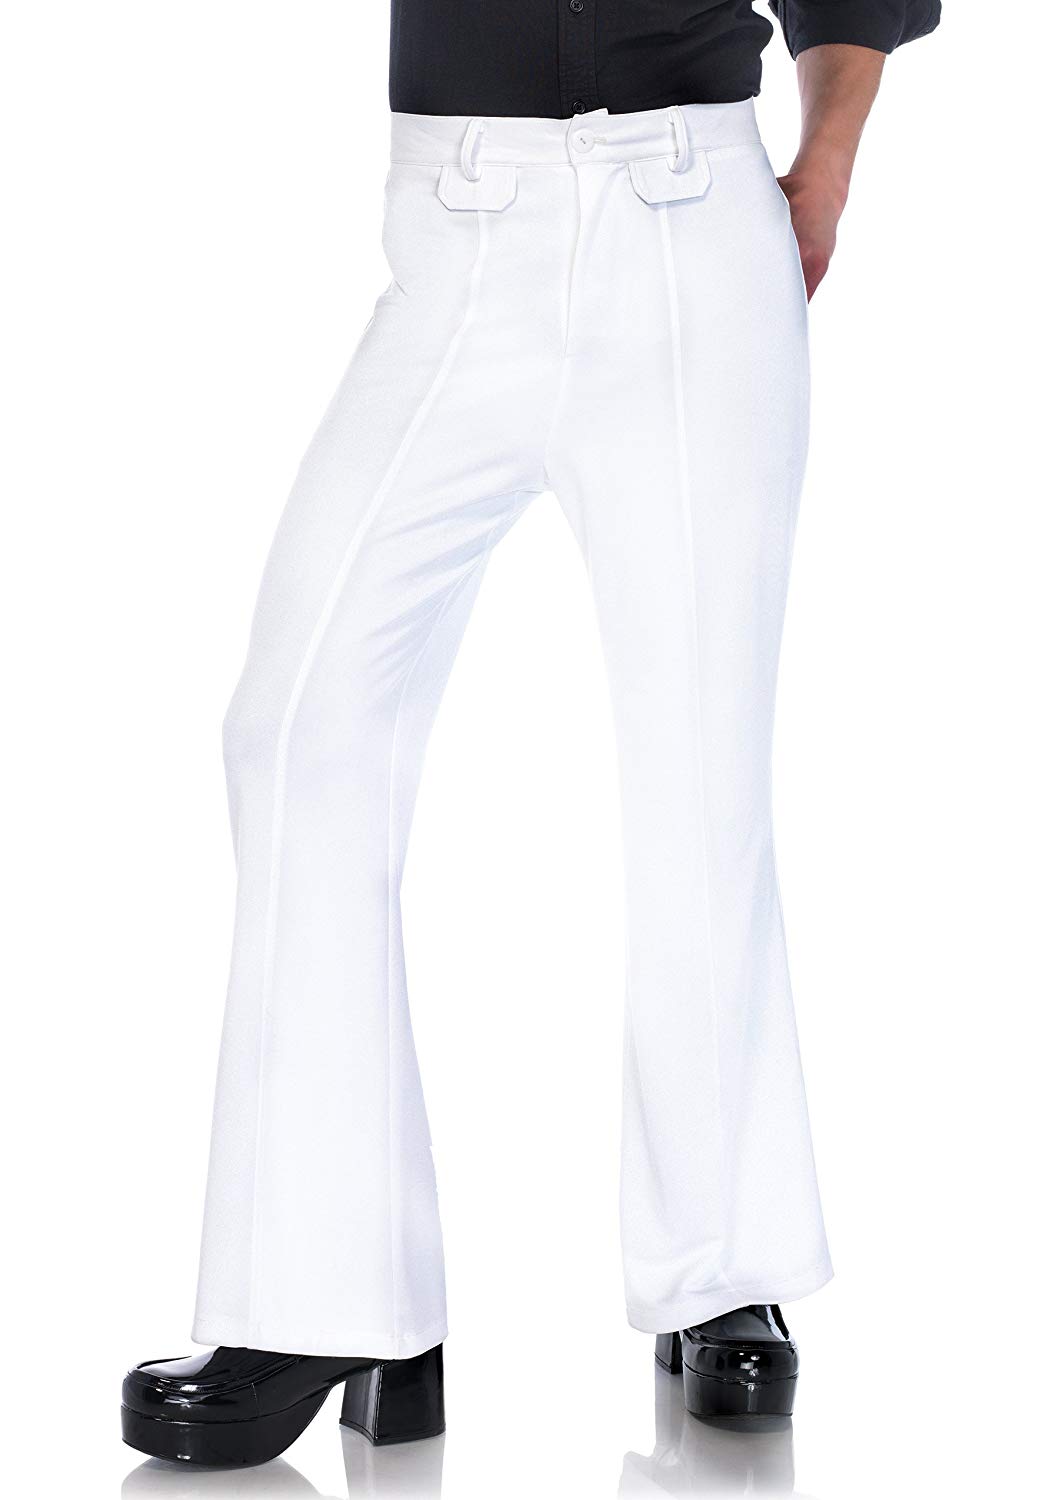 Men's Bell Bottom Pants White Perth